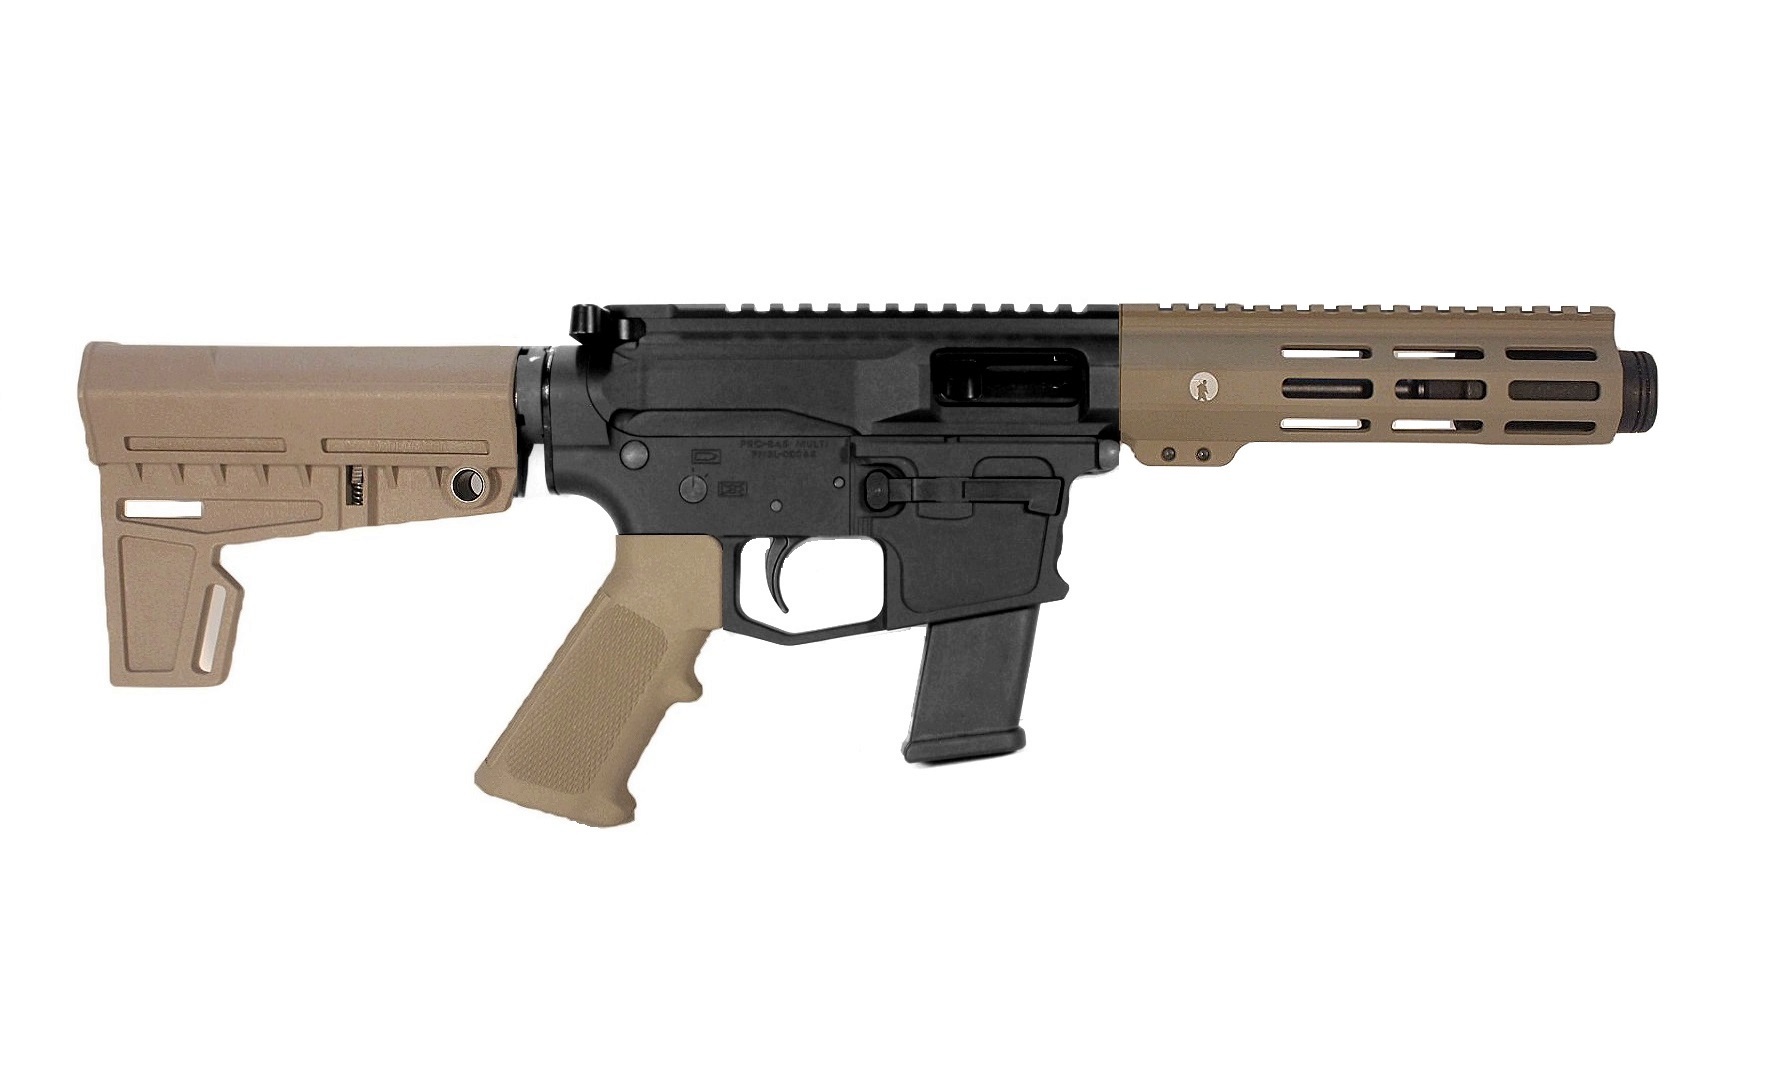 5 inch 45 ACP AR Pistol in BLK/FDE Color 